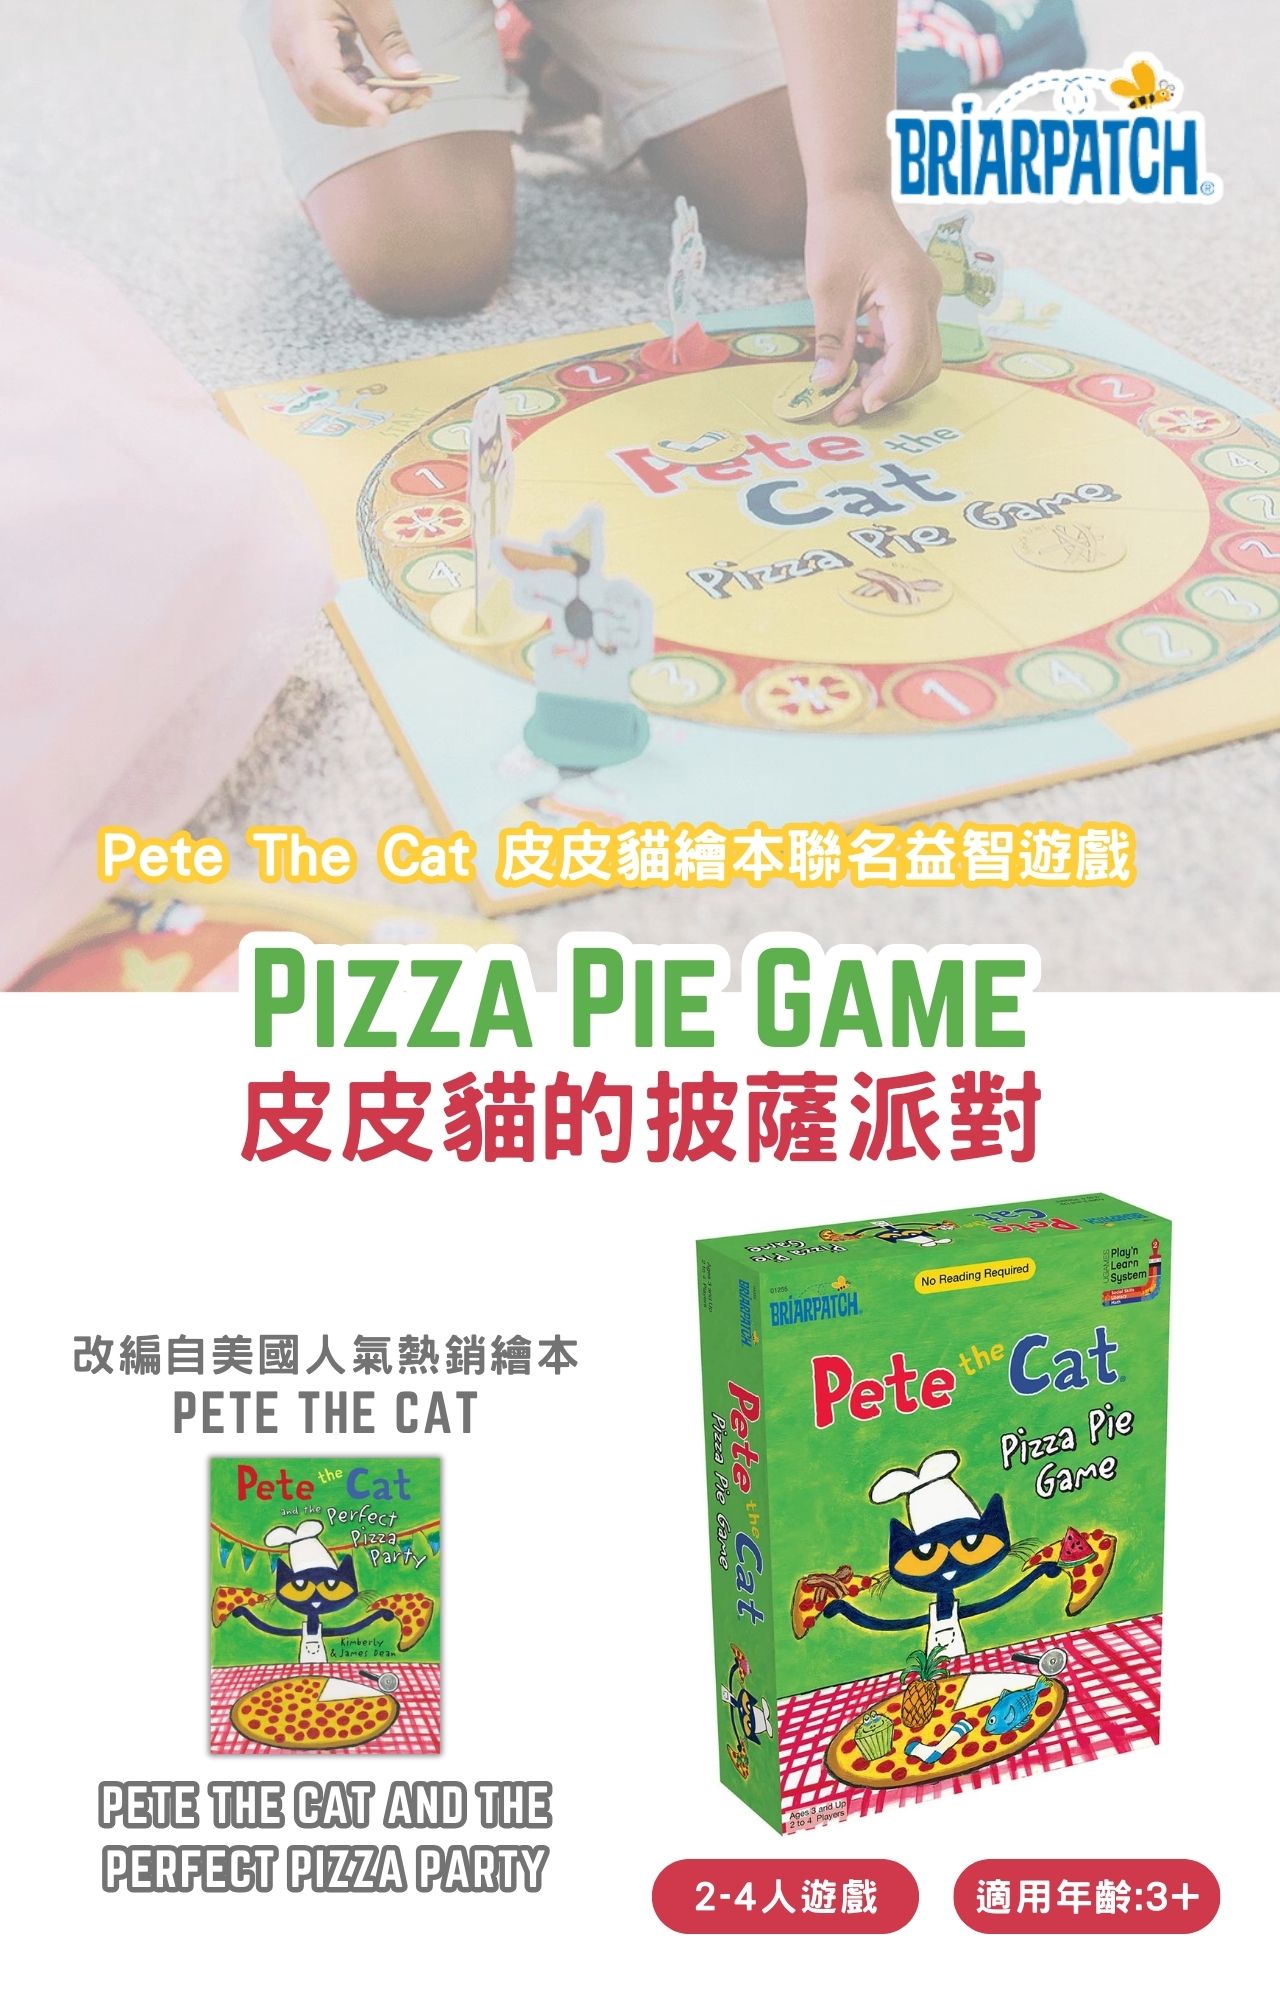 皮皮貓繪本聯名益智桌遊-創意披薩派對 Pete the Cat Pizza Pie Game_產品圖文 (1)